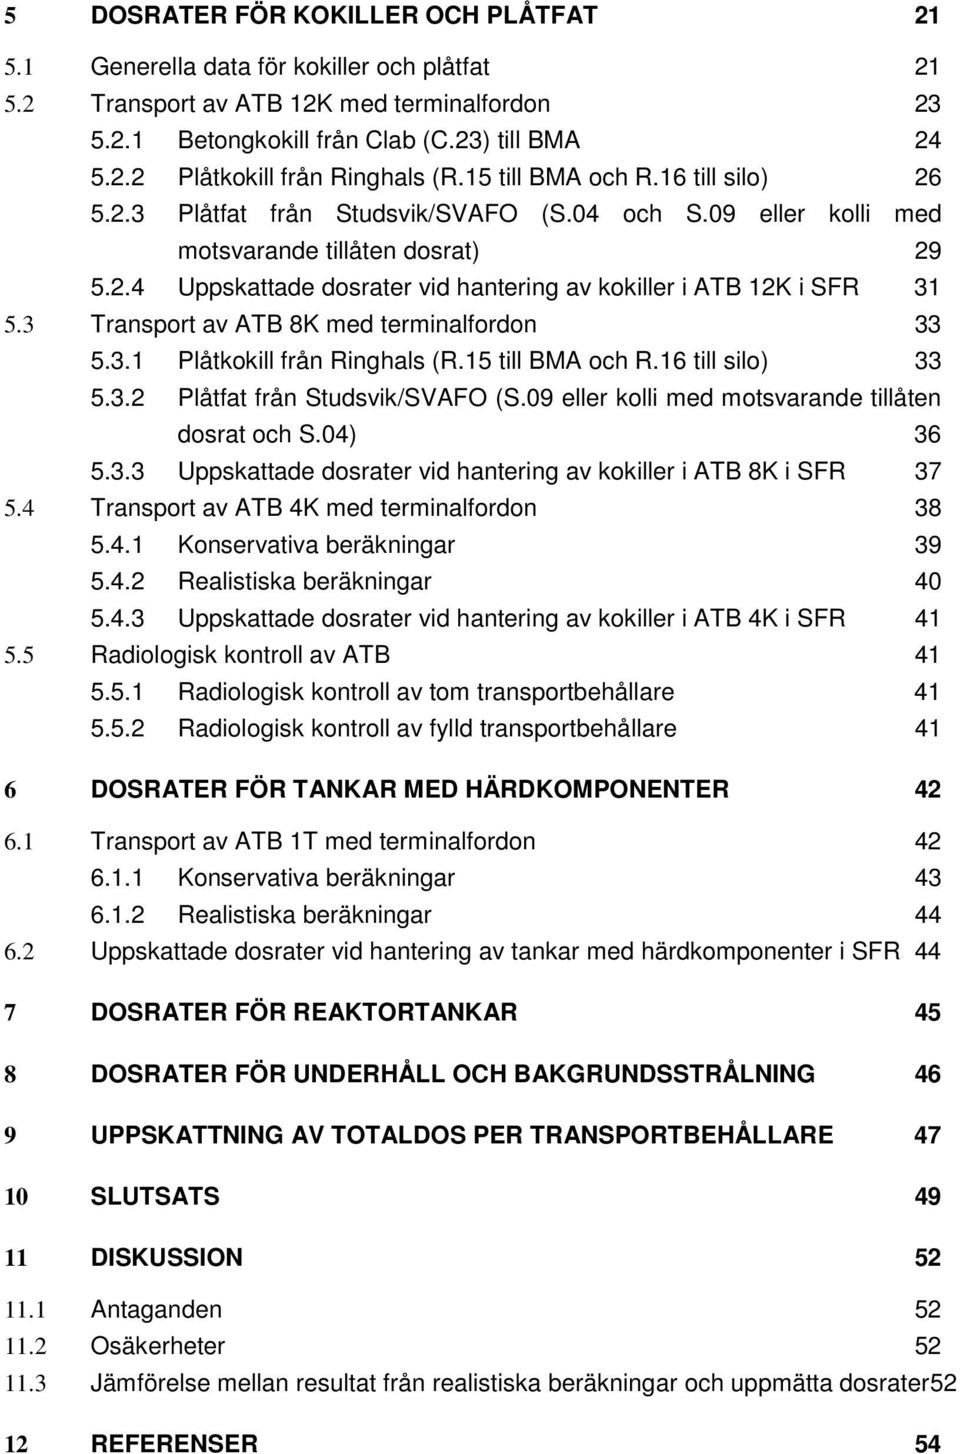 3 Transport av ATB 8K med terminalfordon 33 5.3.1 Plåtkokill från Ringhals (R.15 till BMA och R.16 till silo) 33 5.3.2 Plåtfat från Studsvik/SVAFO (S.